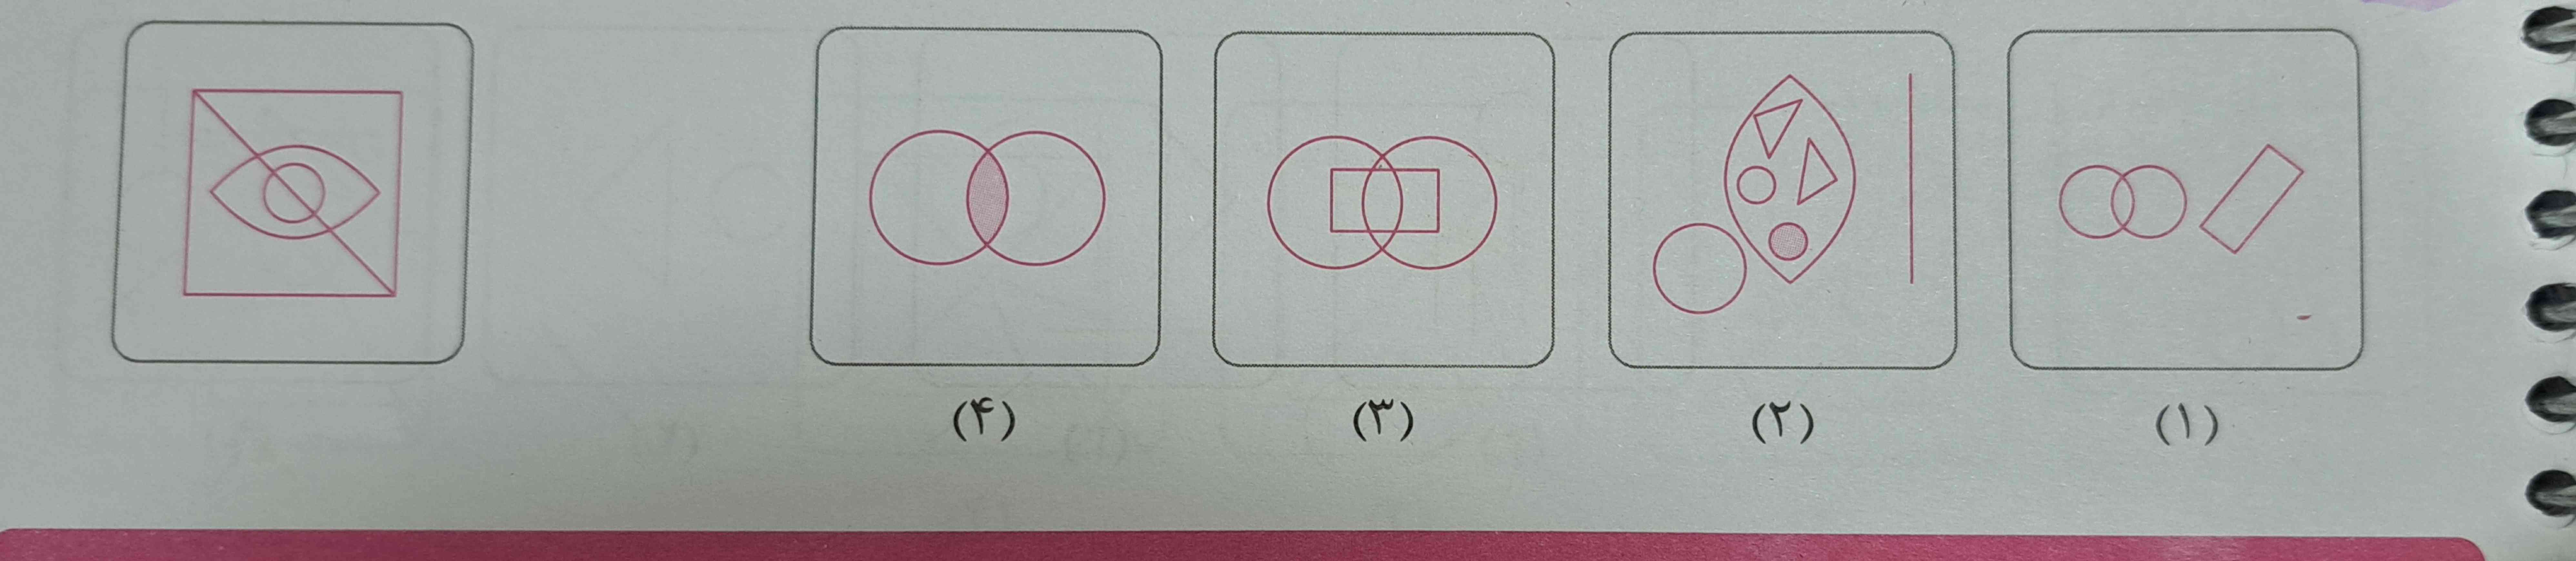 کدام تصویر شامل اجزای تصویر داده شده است؟ میشه با دلیل توضیح بدید پاسخ نامه زده گزینه ۲ ولی گزینه ۲ مربع نداره 